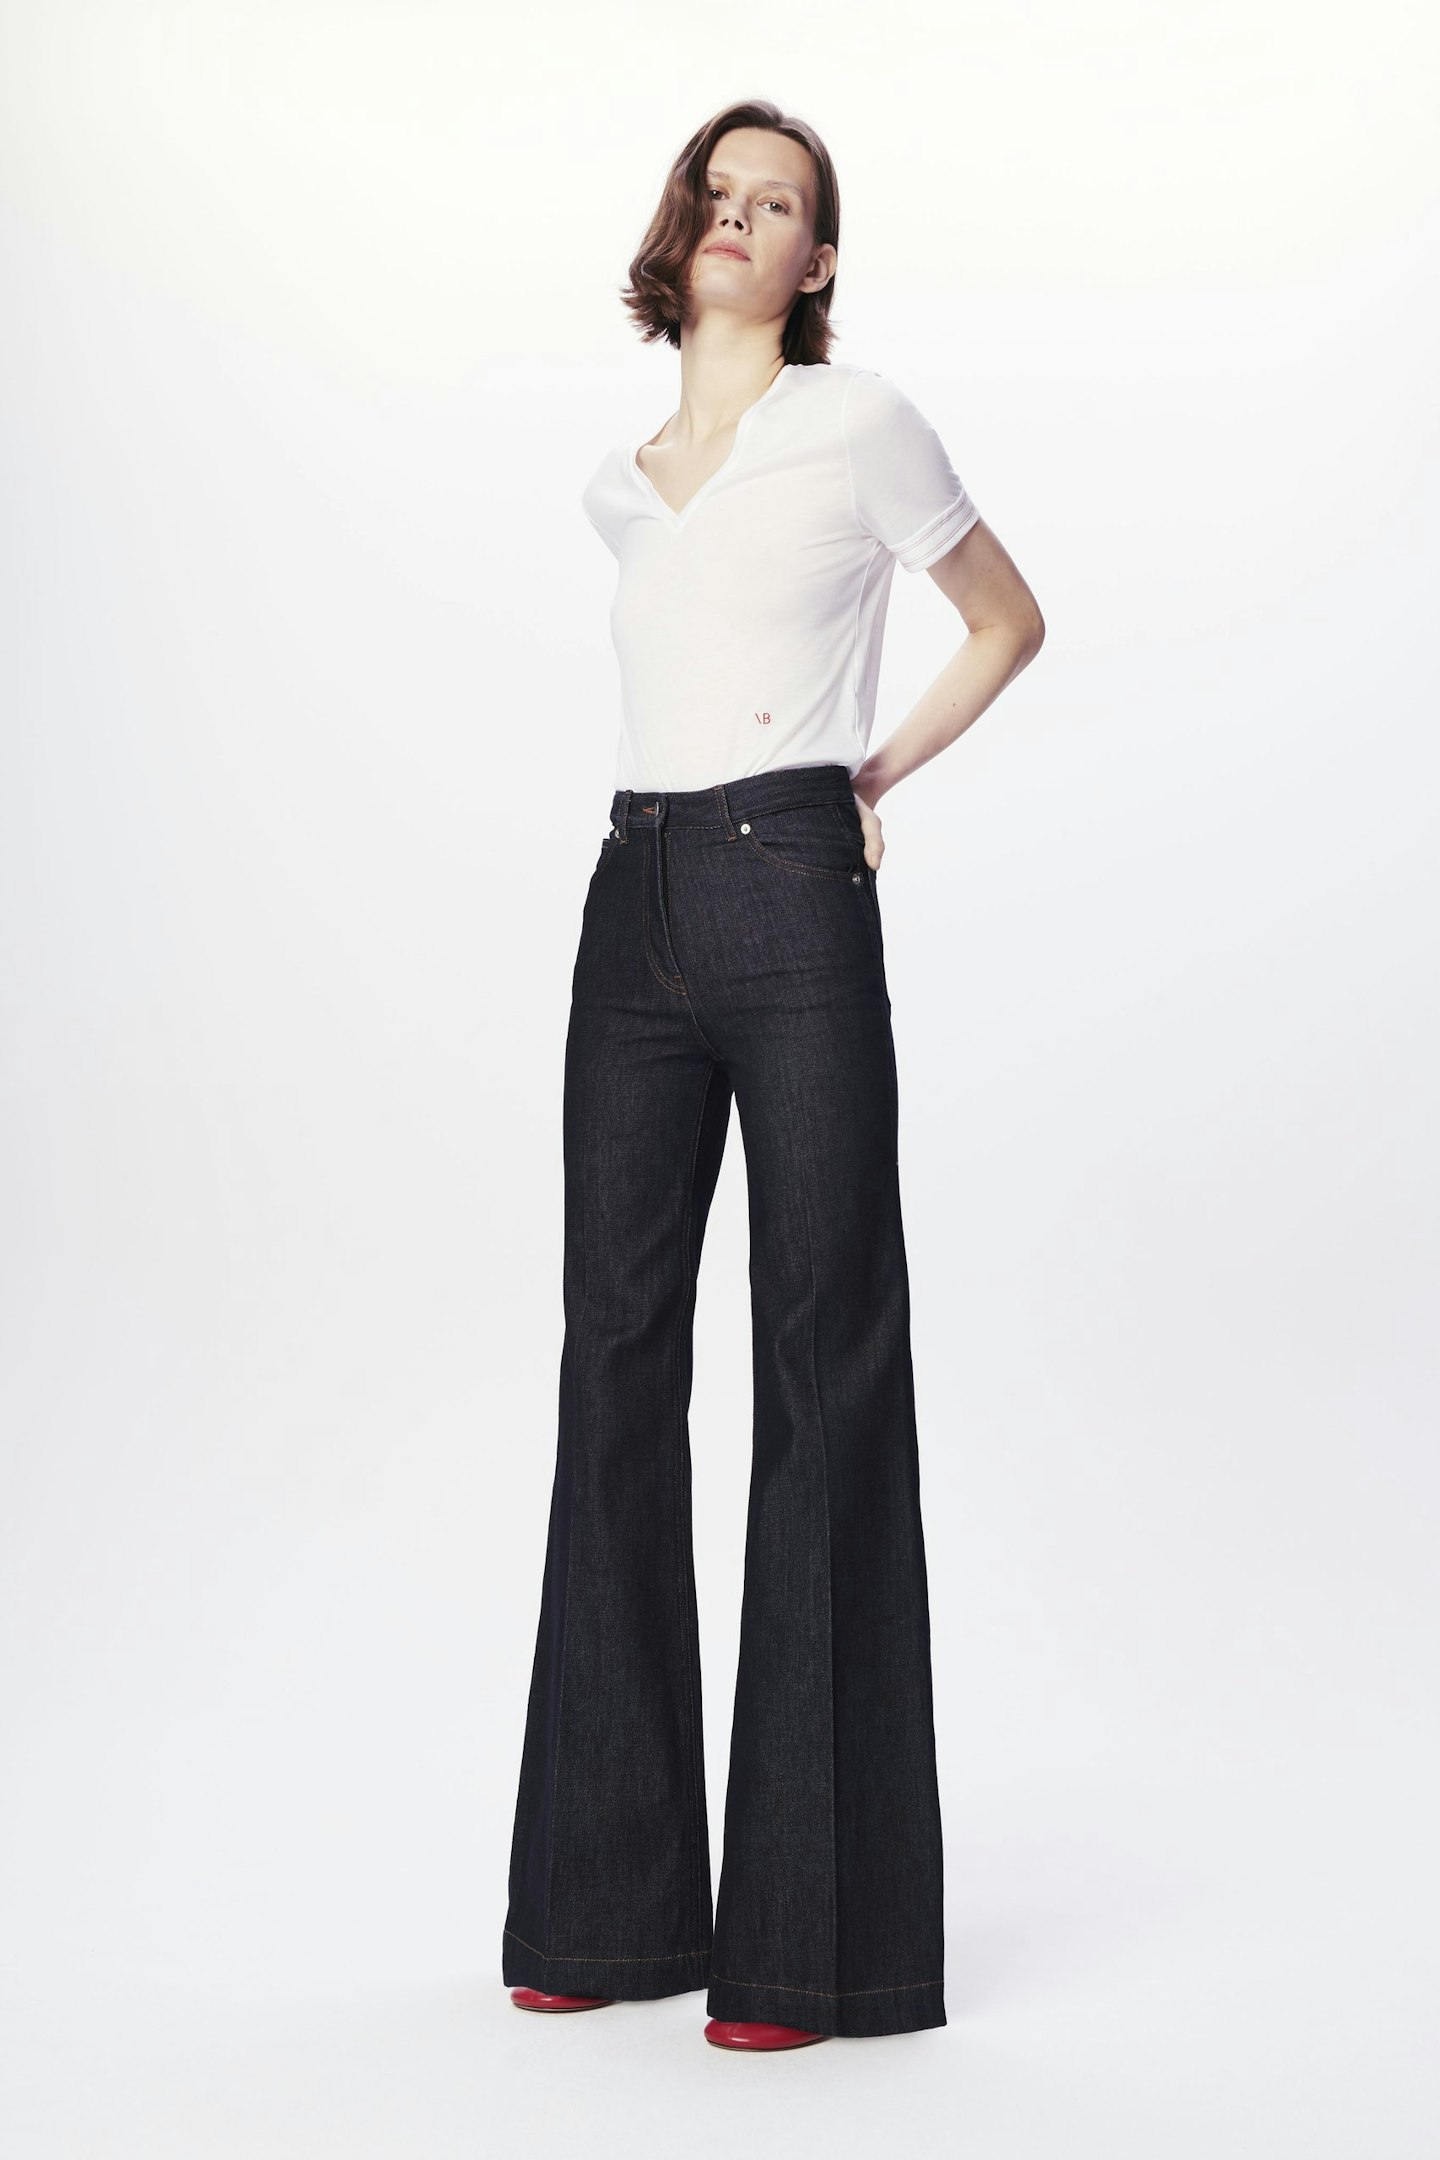 Victoria Beckham, High Waist Flared Jeans, £350